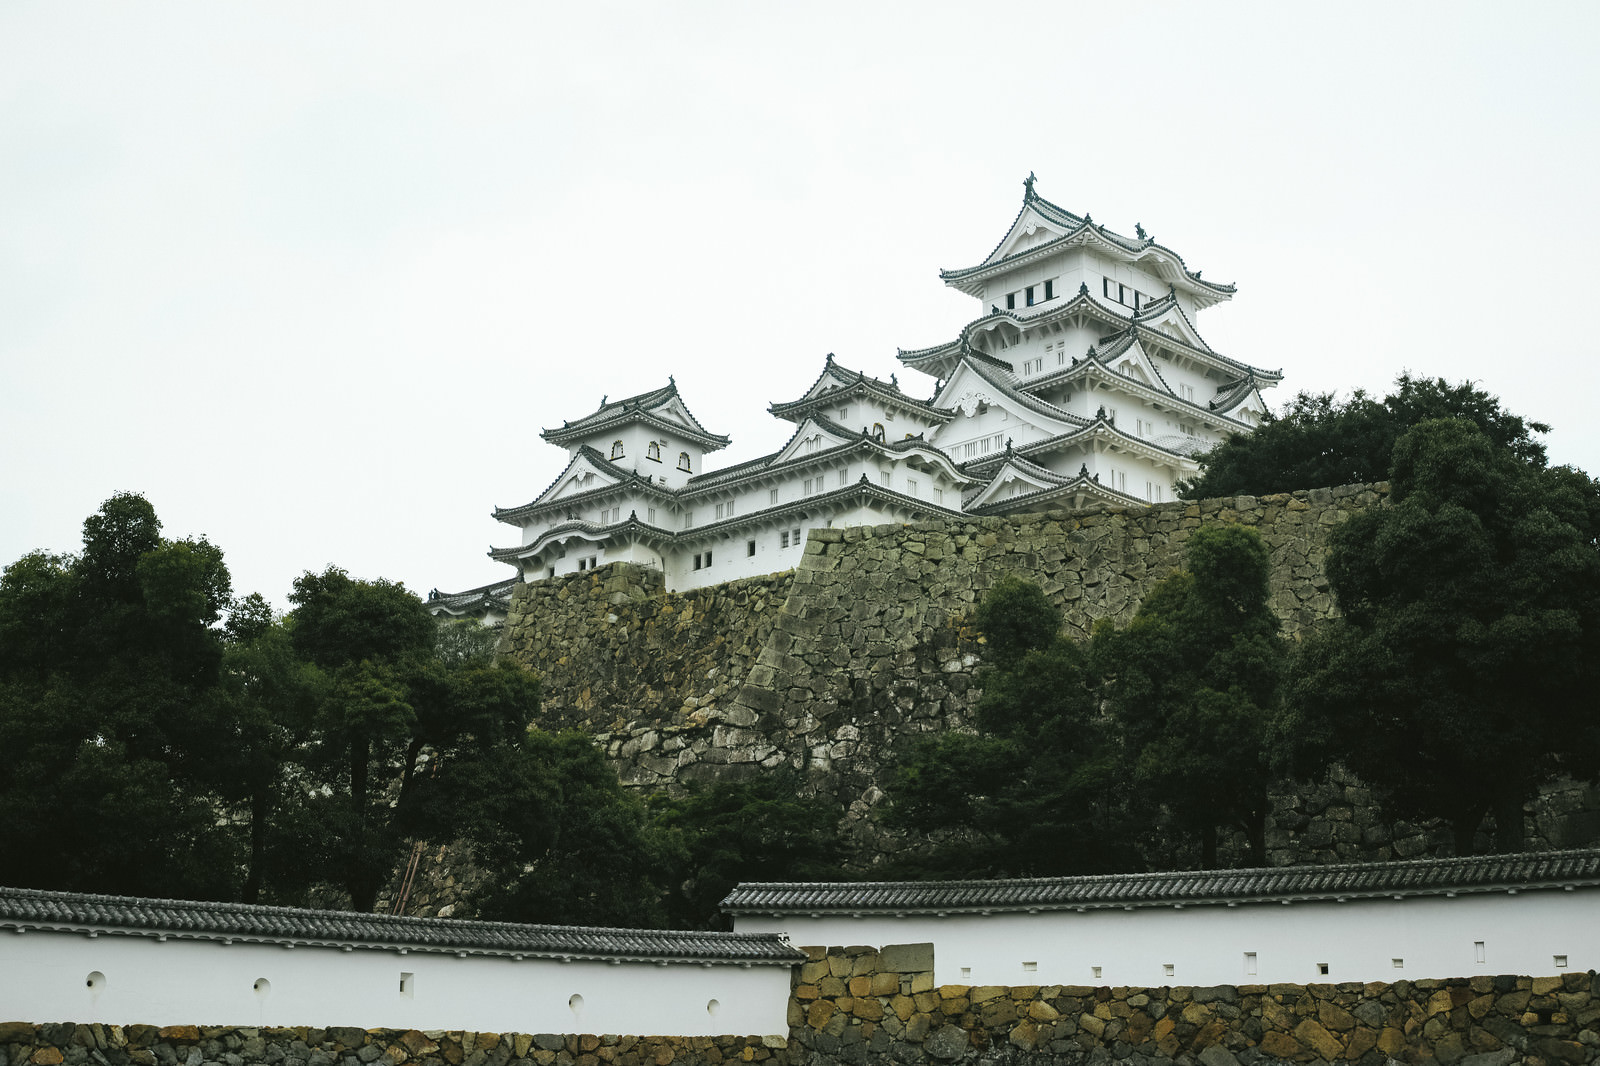 石垣の上にそびえる日本の城 姫路城 の写真を無料ダウンロード フリー素材 ぱくたそ